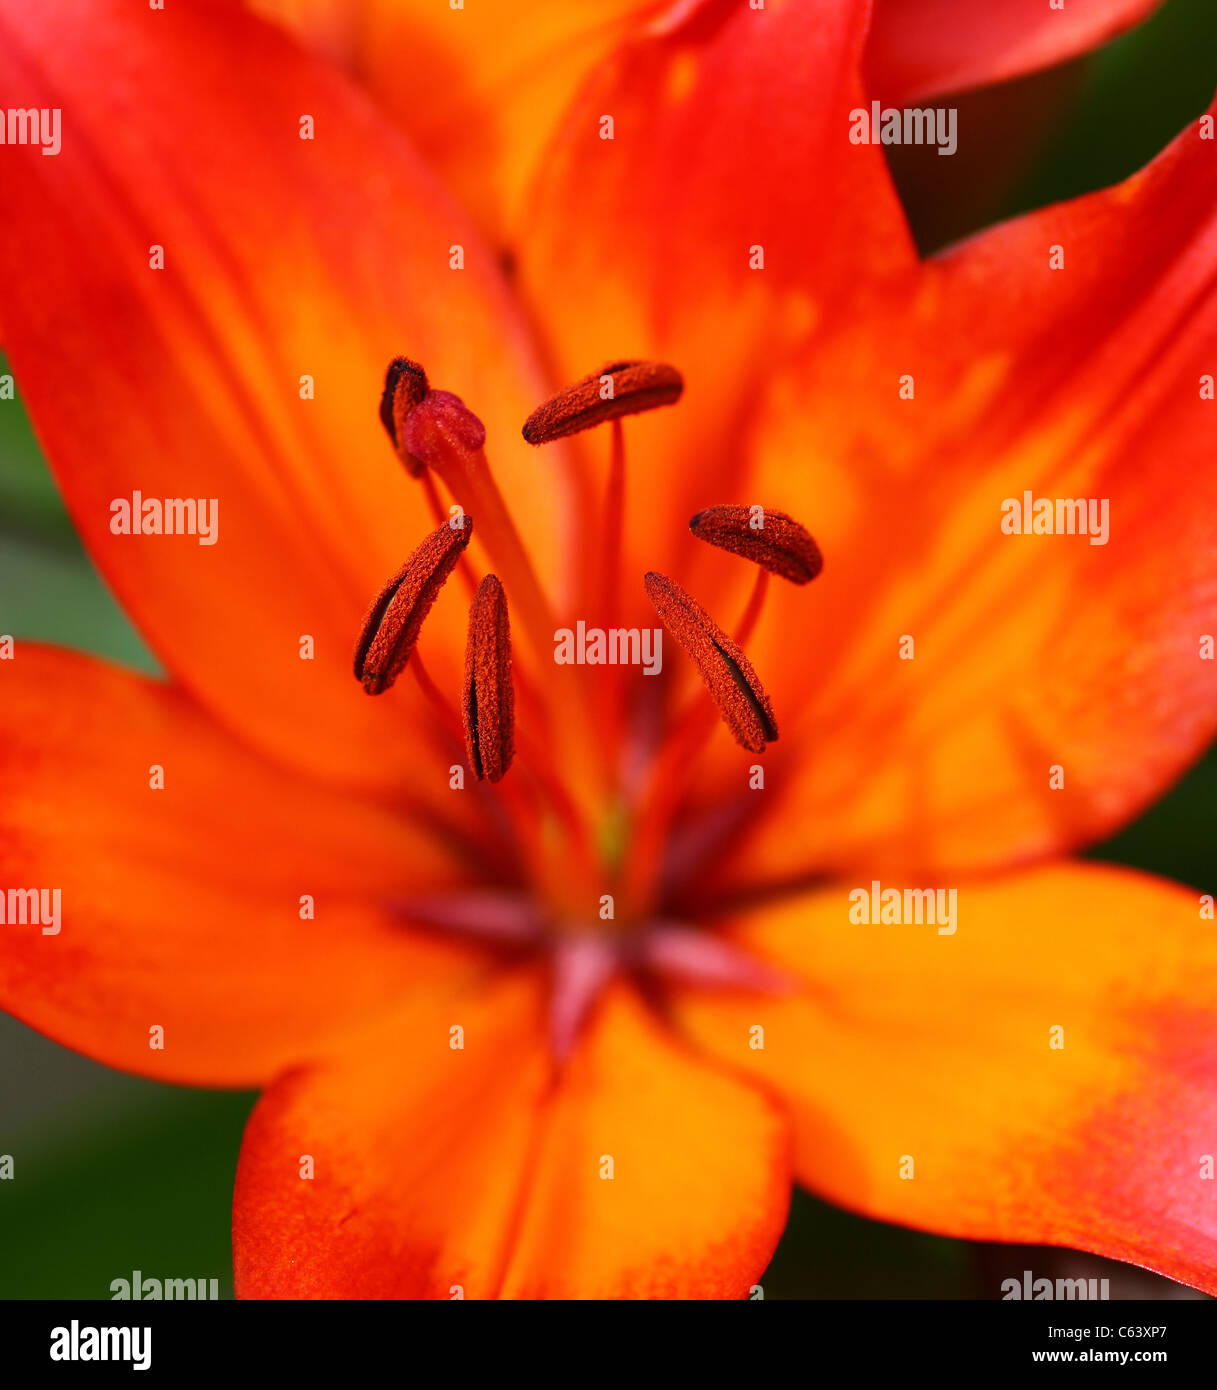 Eine Nahaufnahme oder Makroaufnahme der Staubblätter einer roten Lilie Blume Stockfoto